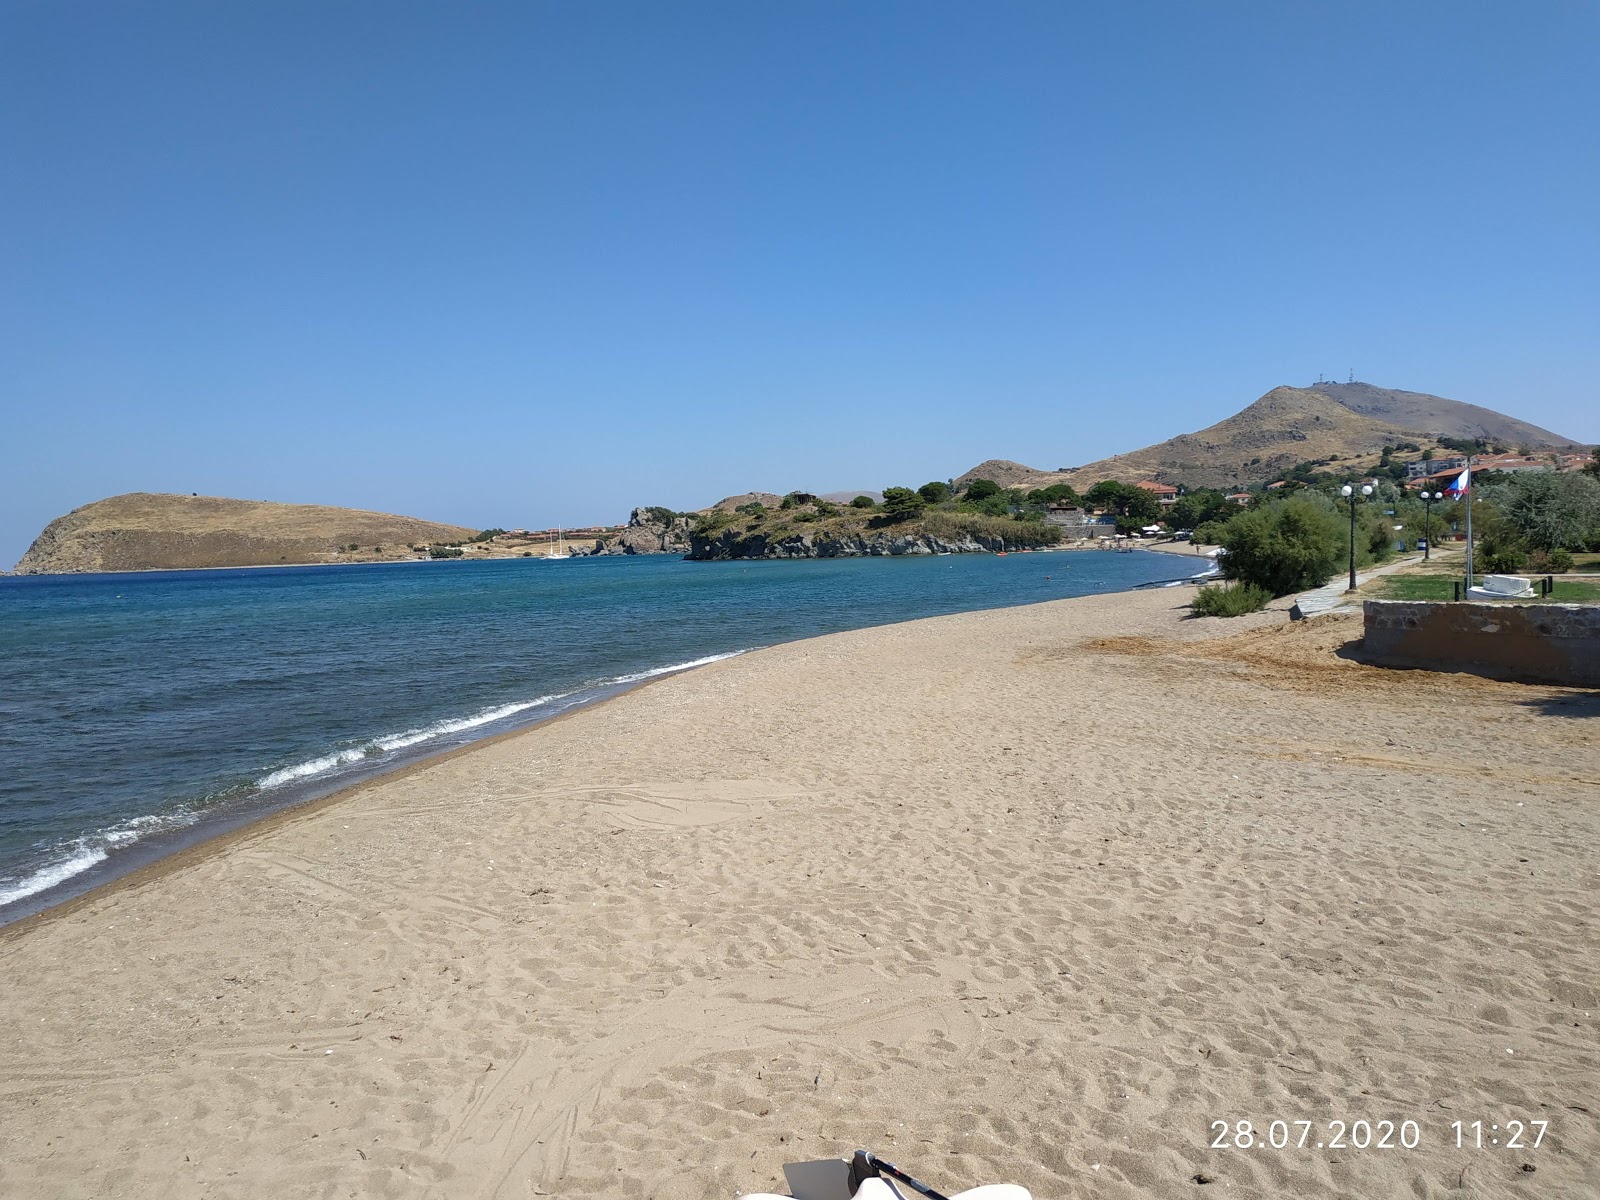 Romeikos Gialos beach'in fotoğrafı geniş ile birlikte